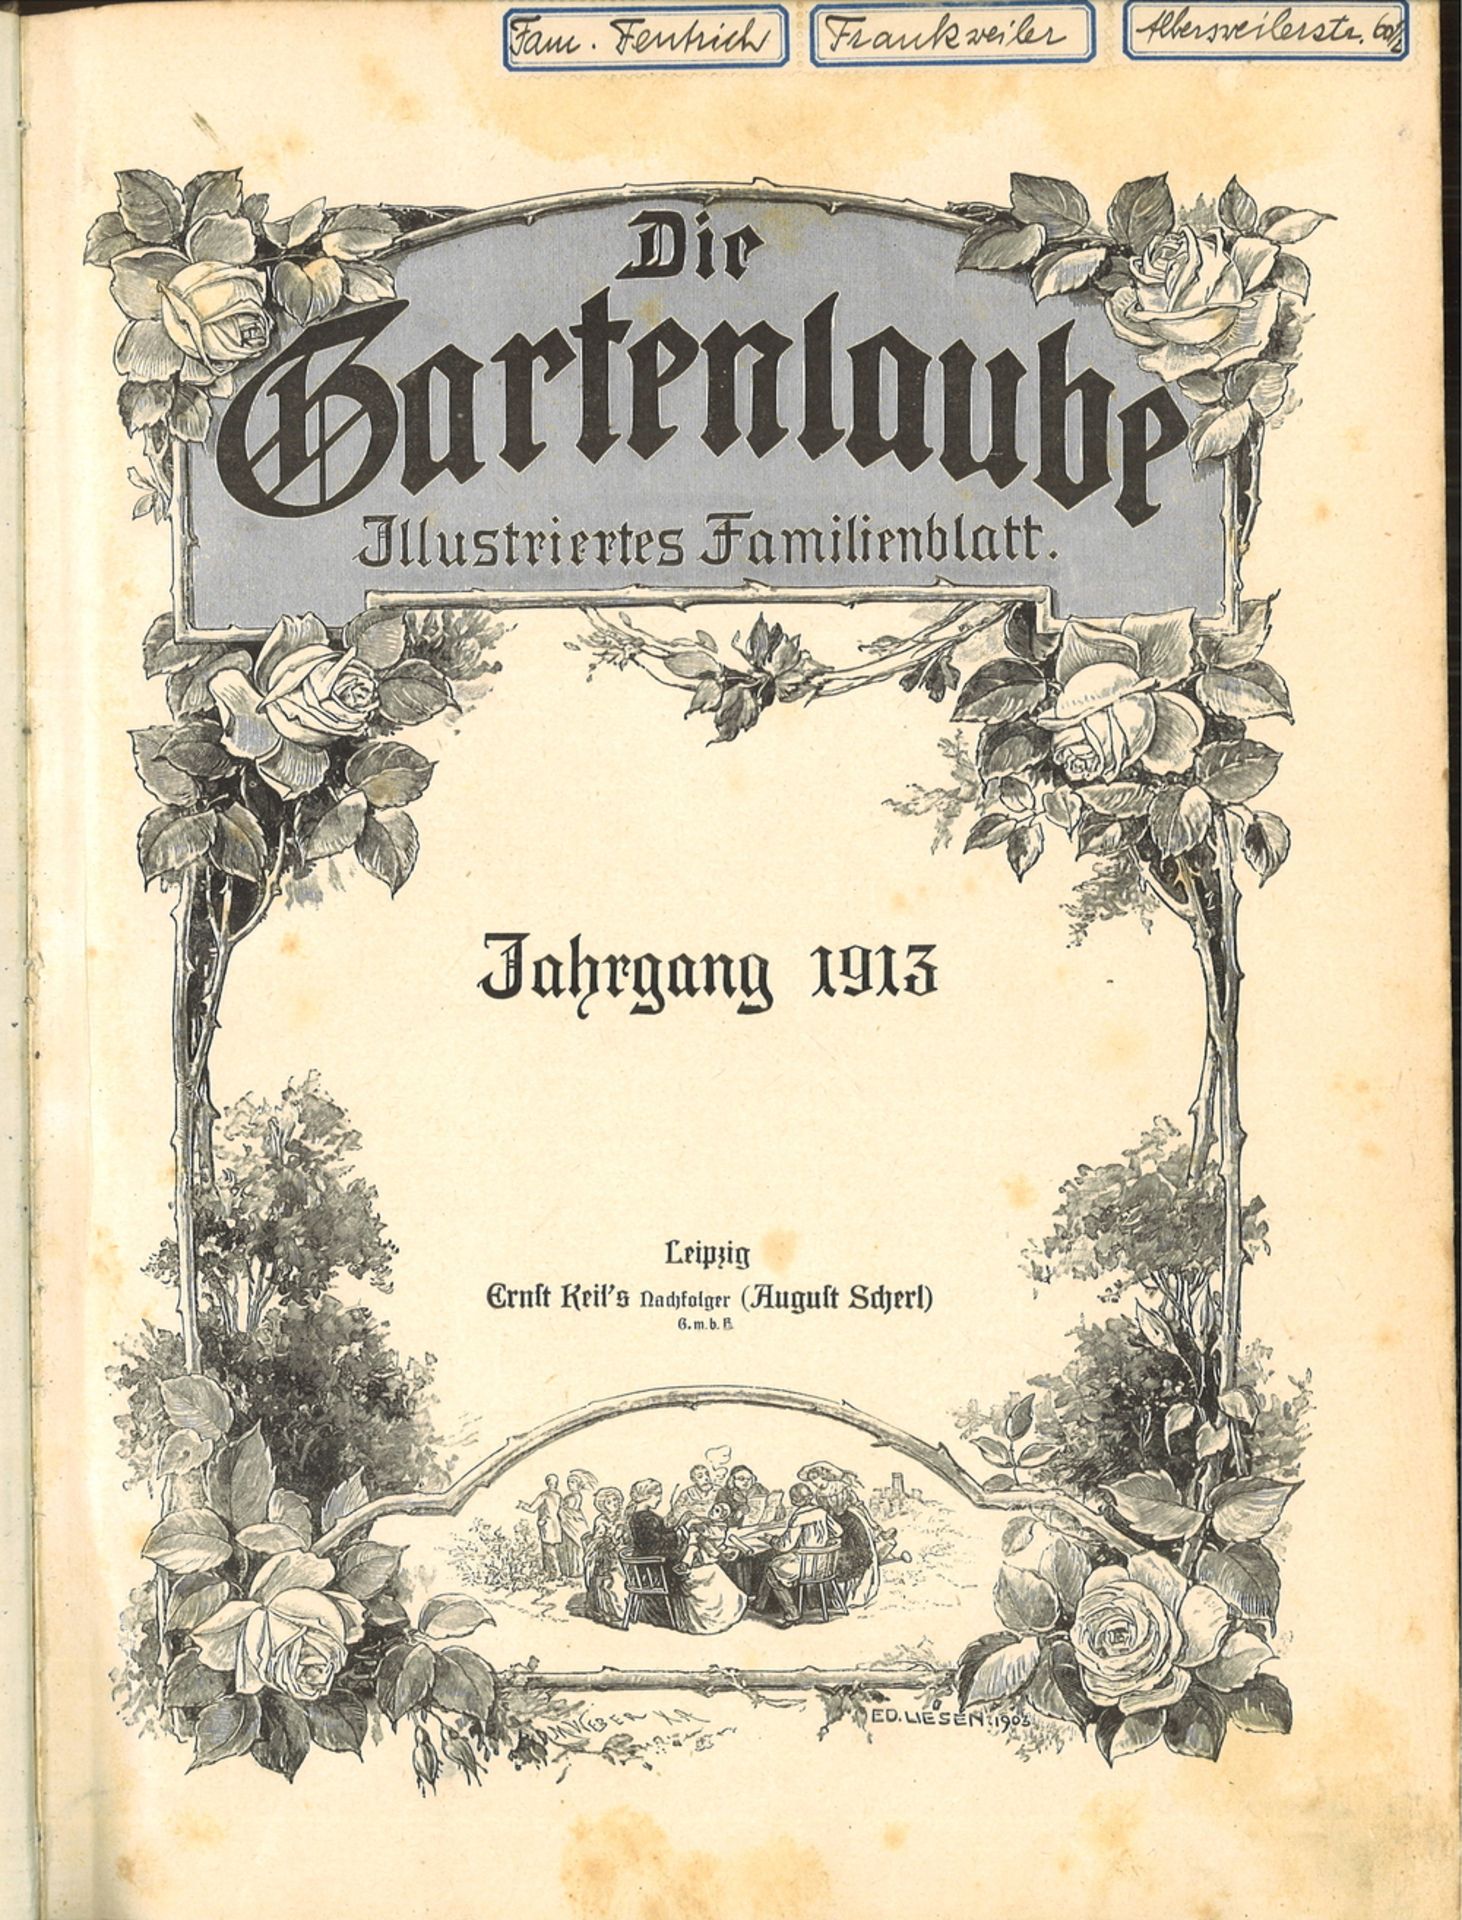 Die Gartenlaube. Illustriertes Familienblatt. Jahrgang 1913. Verlag: Leipzig, Ernst Keil's